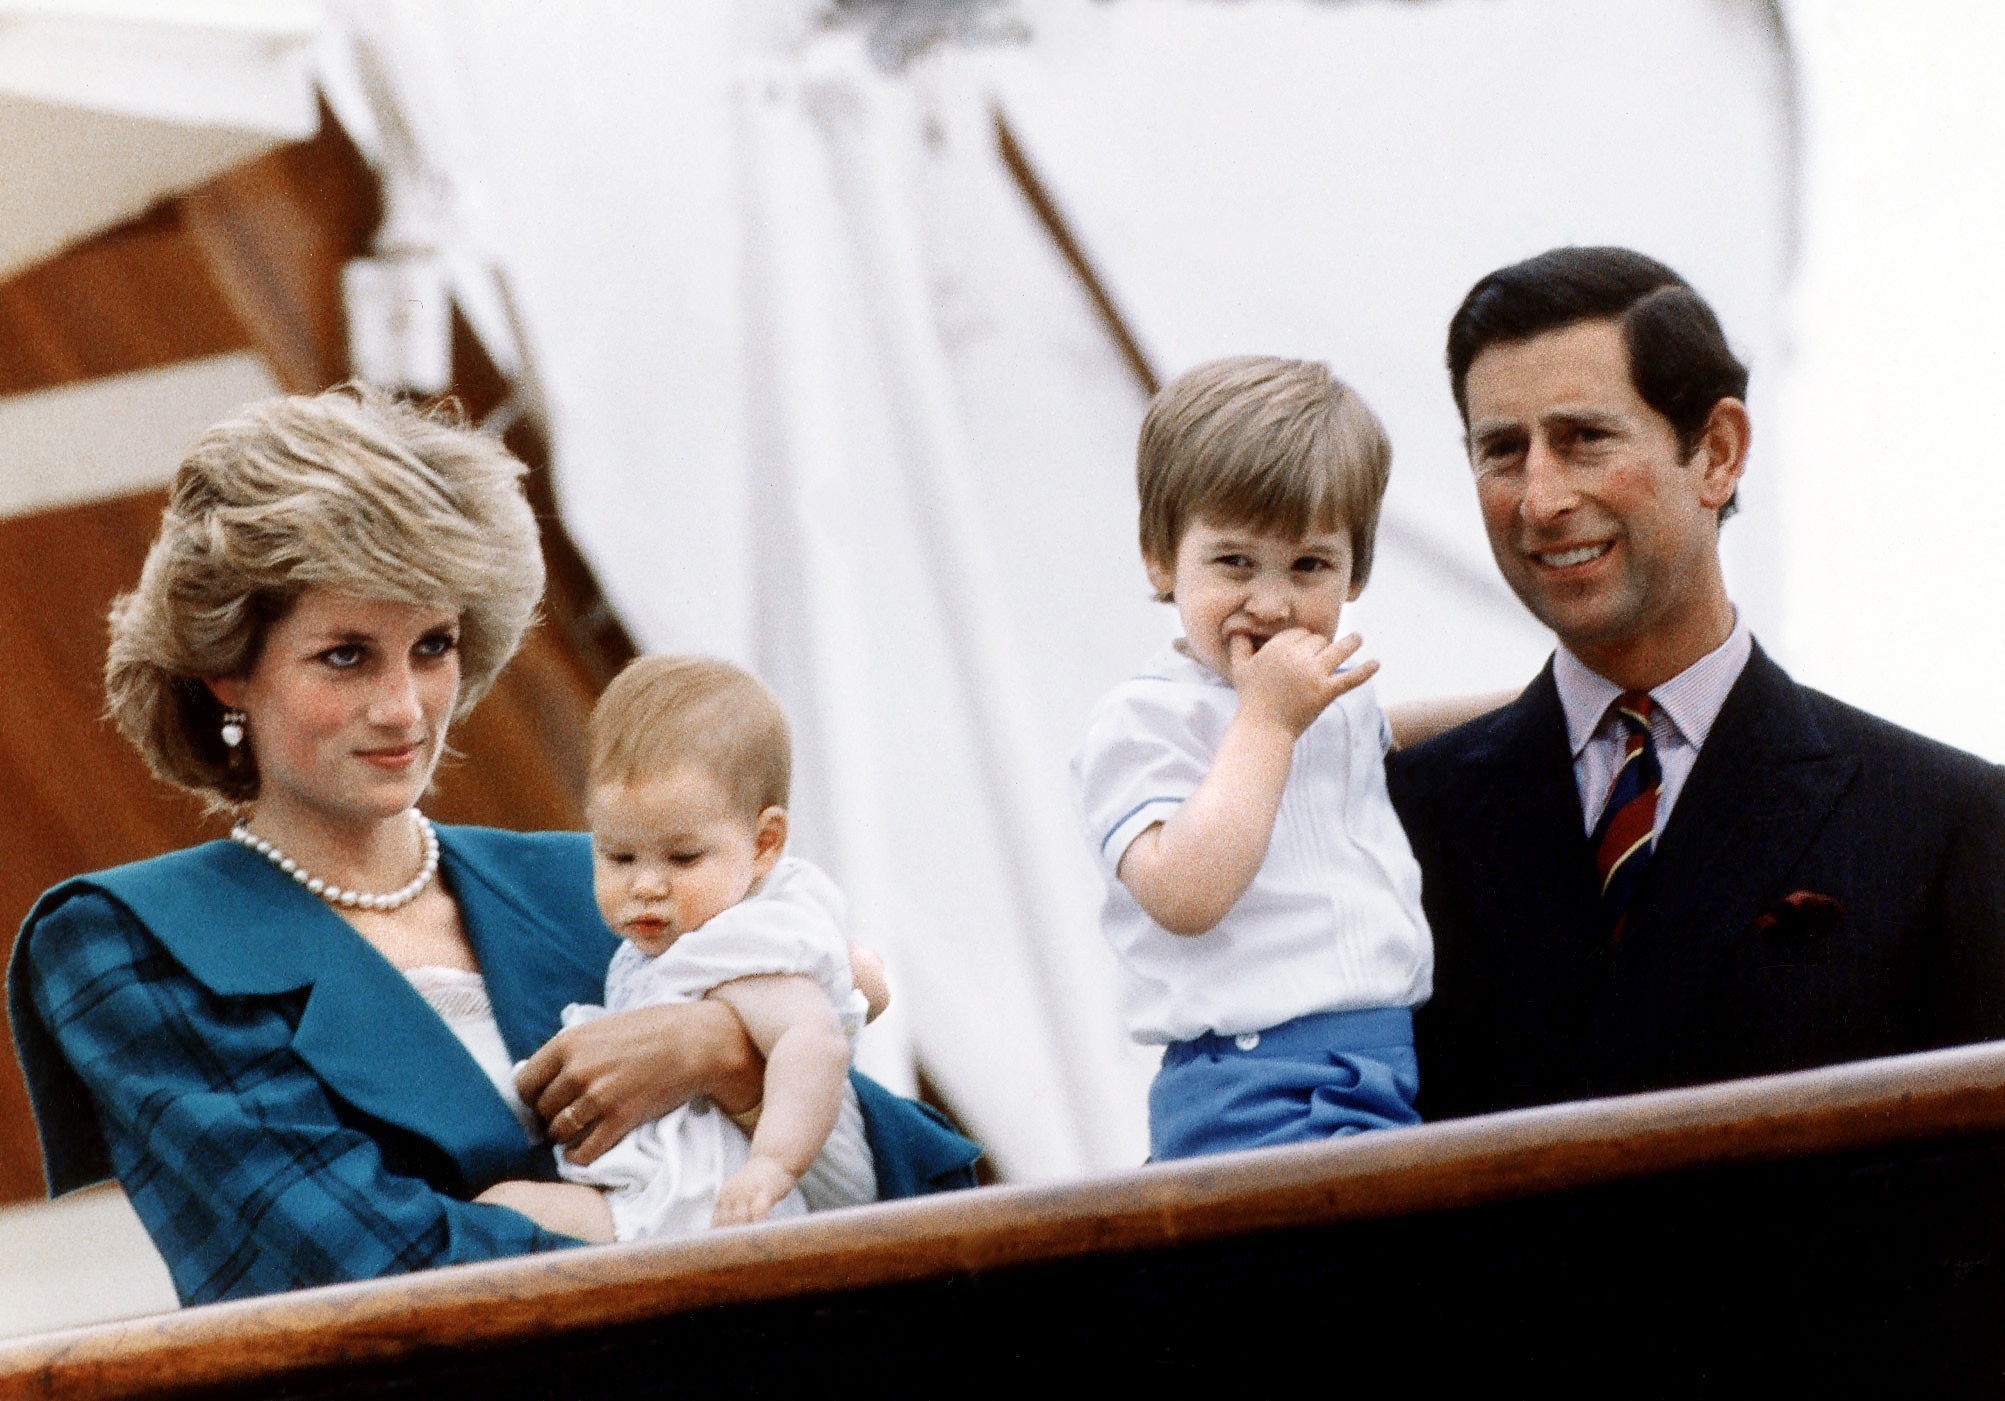 La princesa Diana, el príncipe Harry, el príncipe William y el príncipe Charles a bordo del yate real Britannia el 6 de mayo de 1985 en Venecia, Italia | Foto: Getty Images